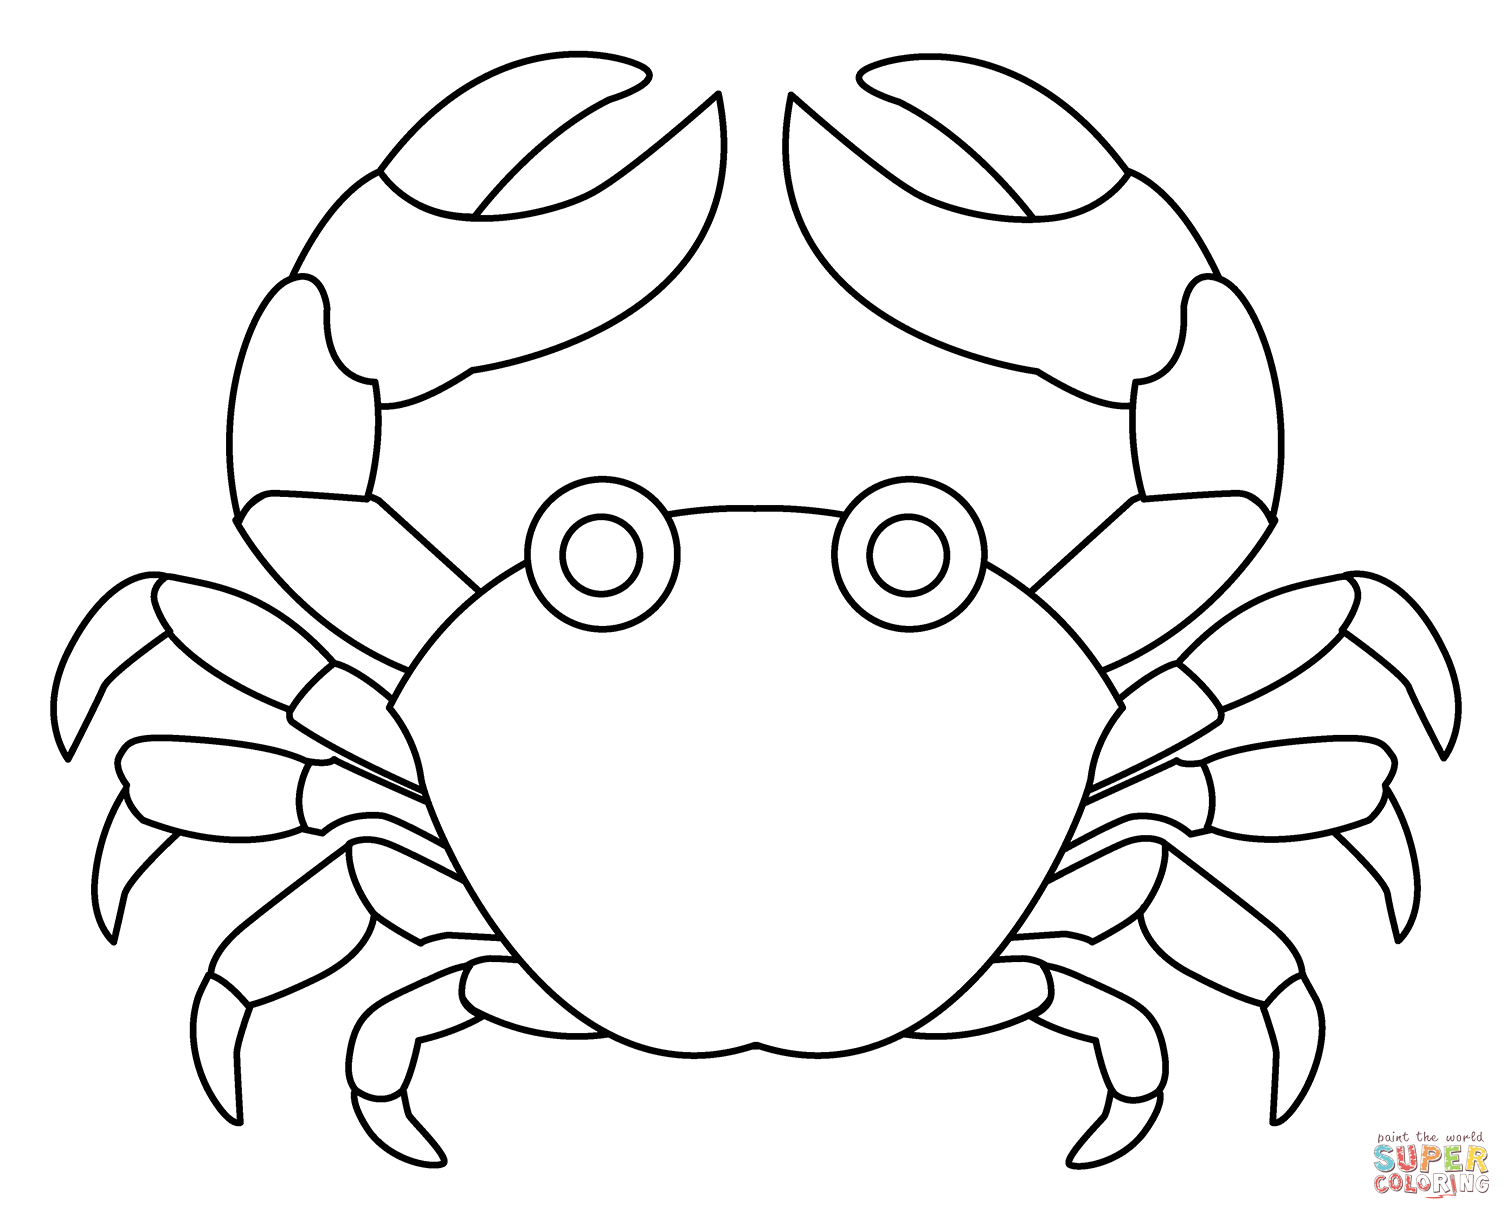 Funny crab emoji